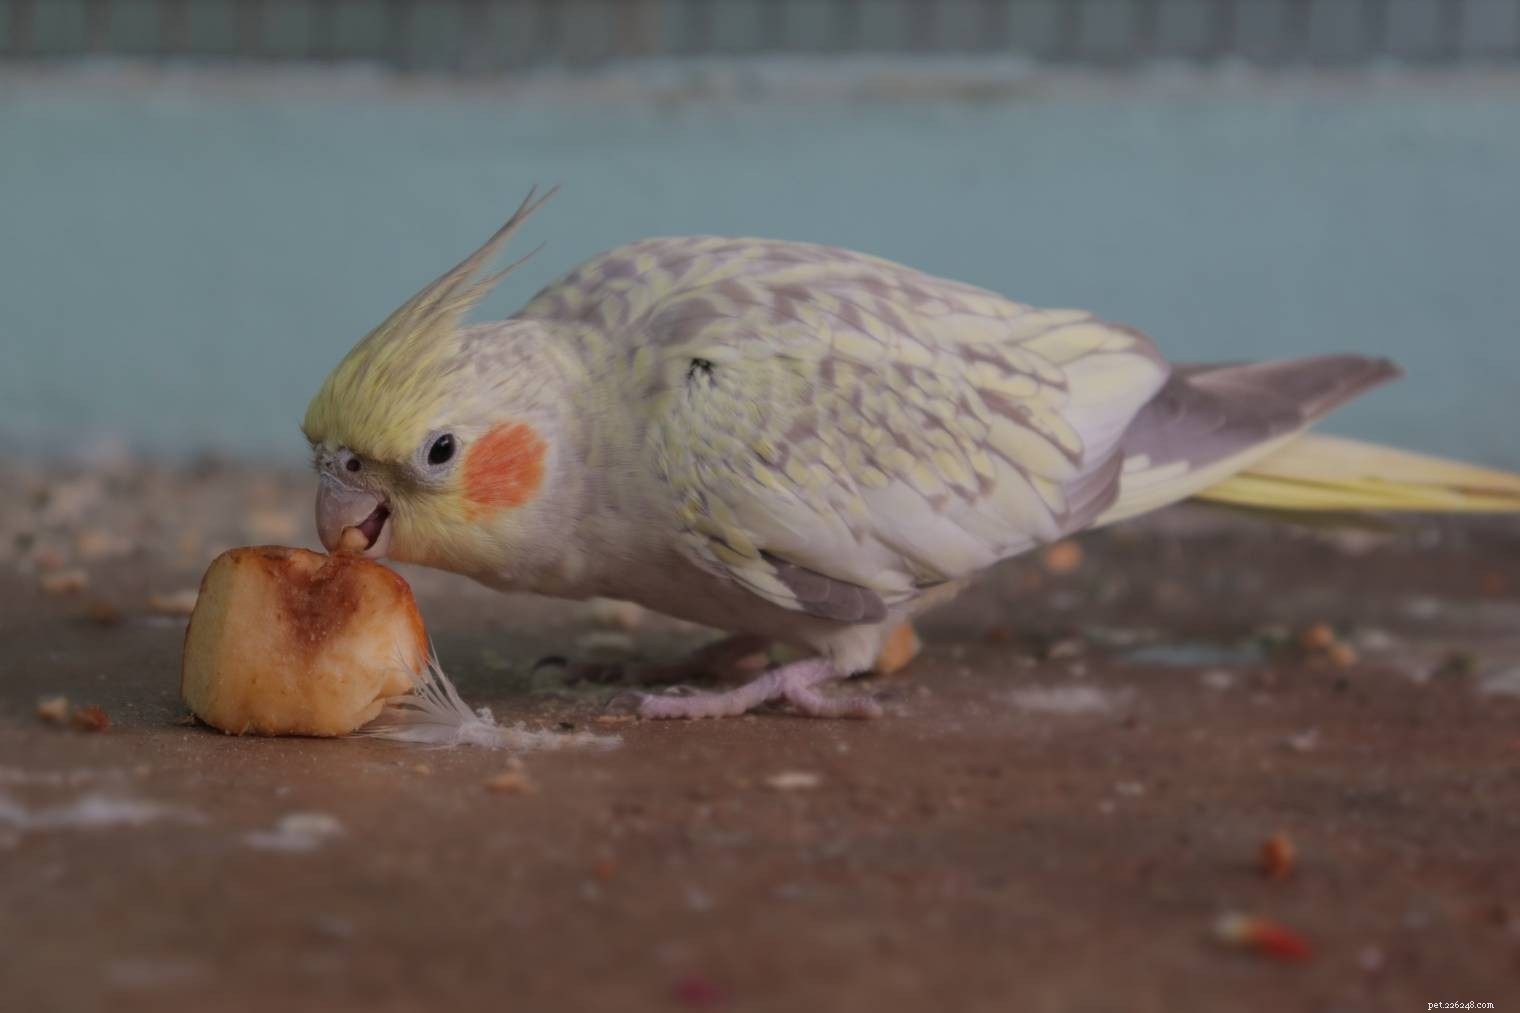 I cockatiel possono mangiare le arance? Cosa devi sapere!